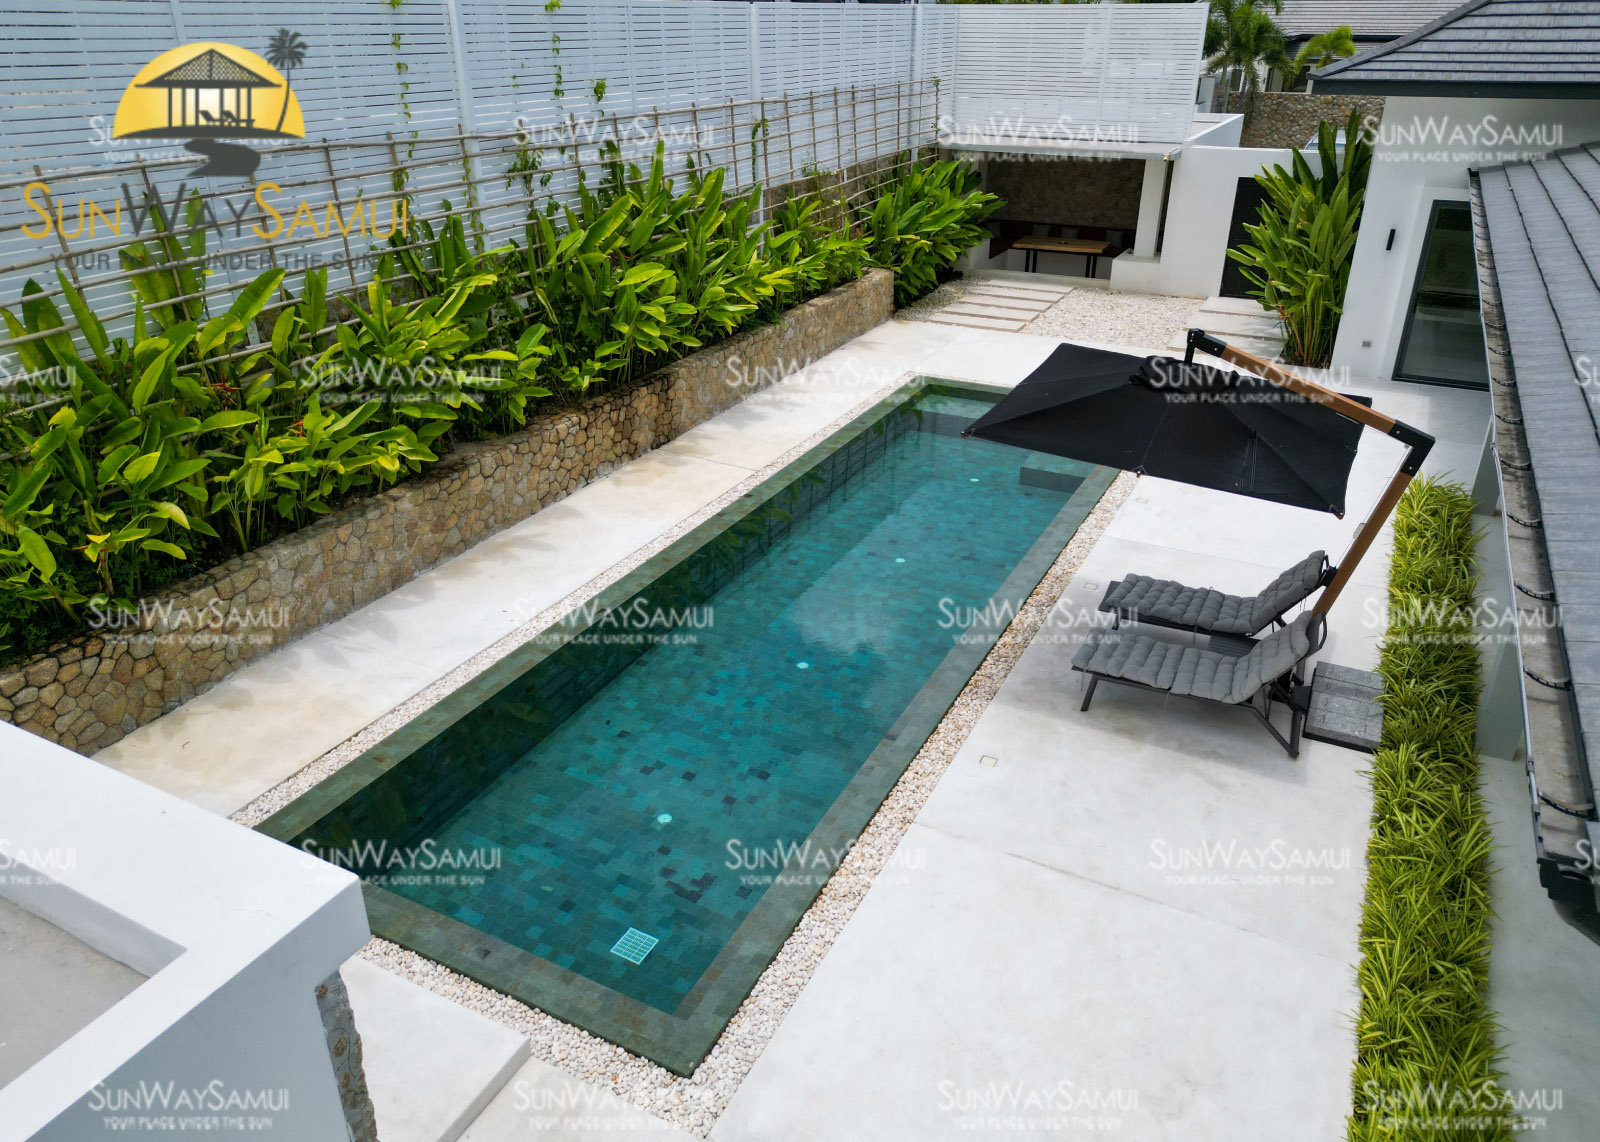 Tropical Balinese 4 Bedroom Garden Pool Villa in Maenam for Sale: Tropical Balinese 4 Bedroom Garden Pool Villa in Maenam for Sale